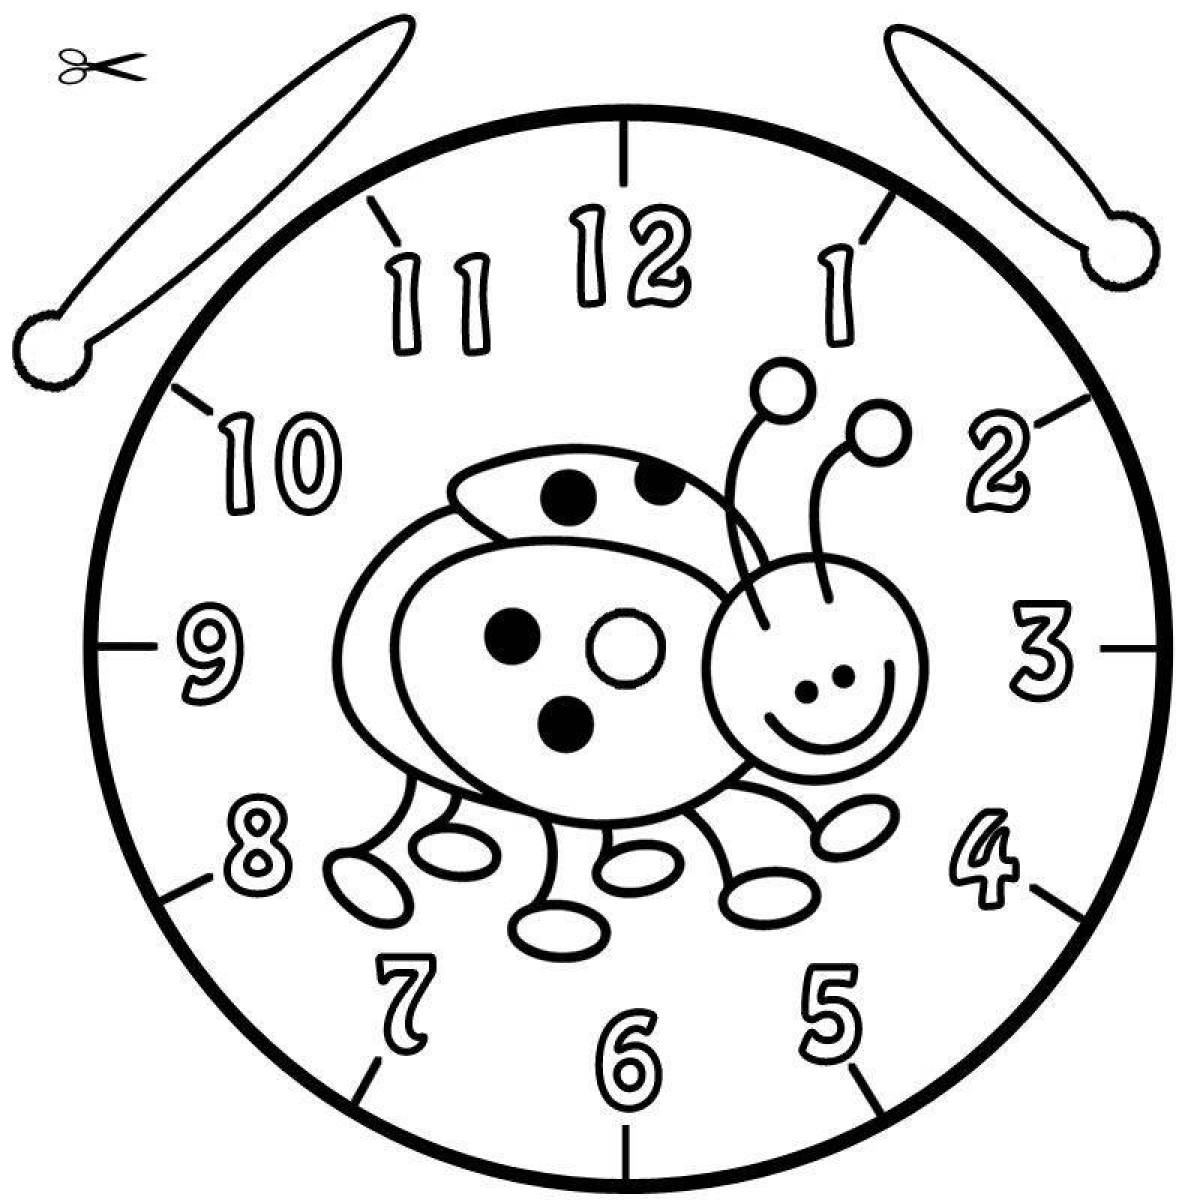 Coloring book magic clock for kids